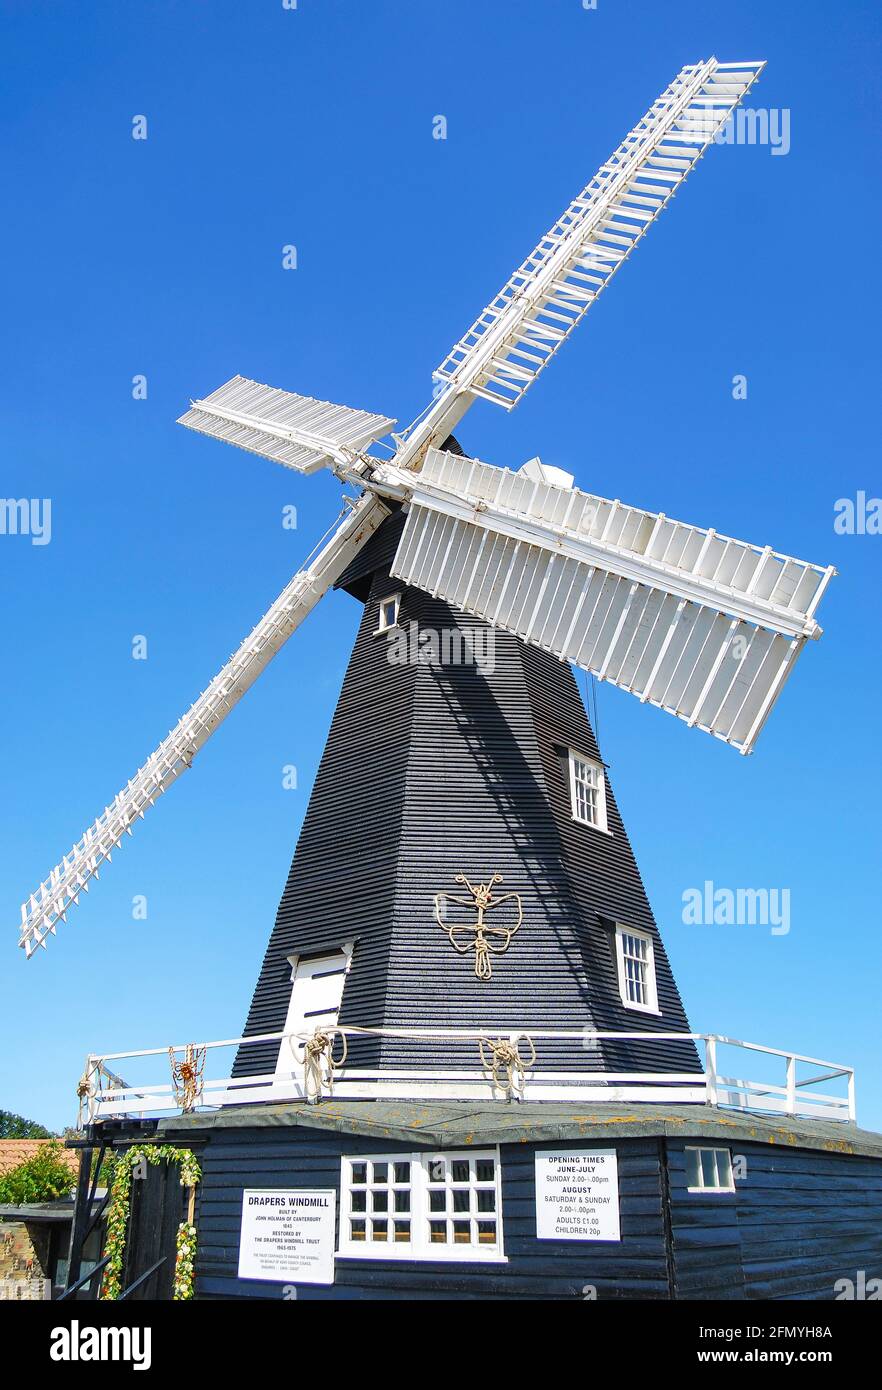 Drapers (ancien) Moulin à vent de Smock, Margate, Kent, Angleterre, Royaume-Uni Banque D'Images